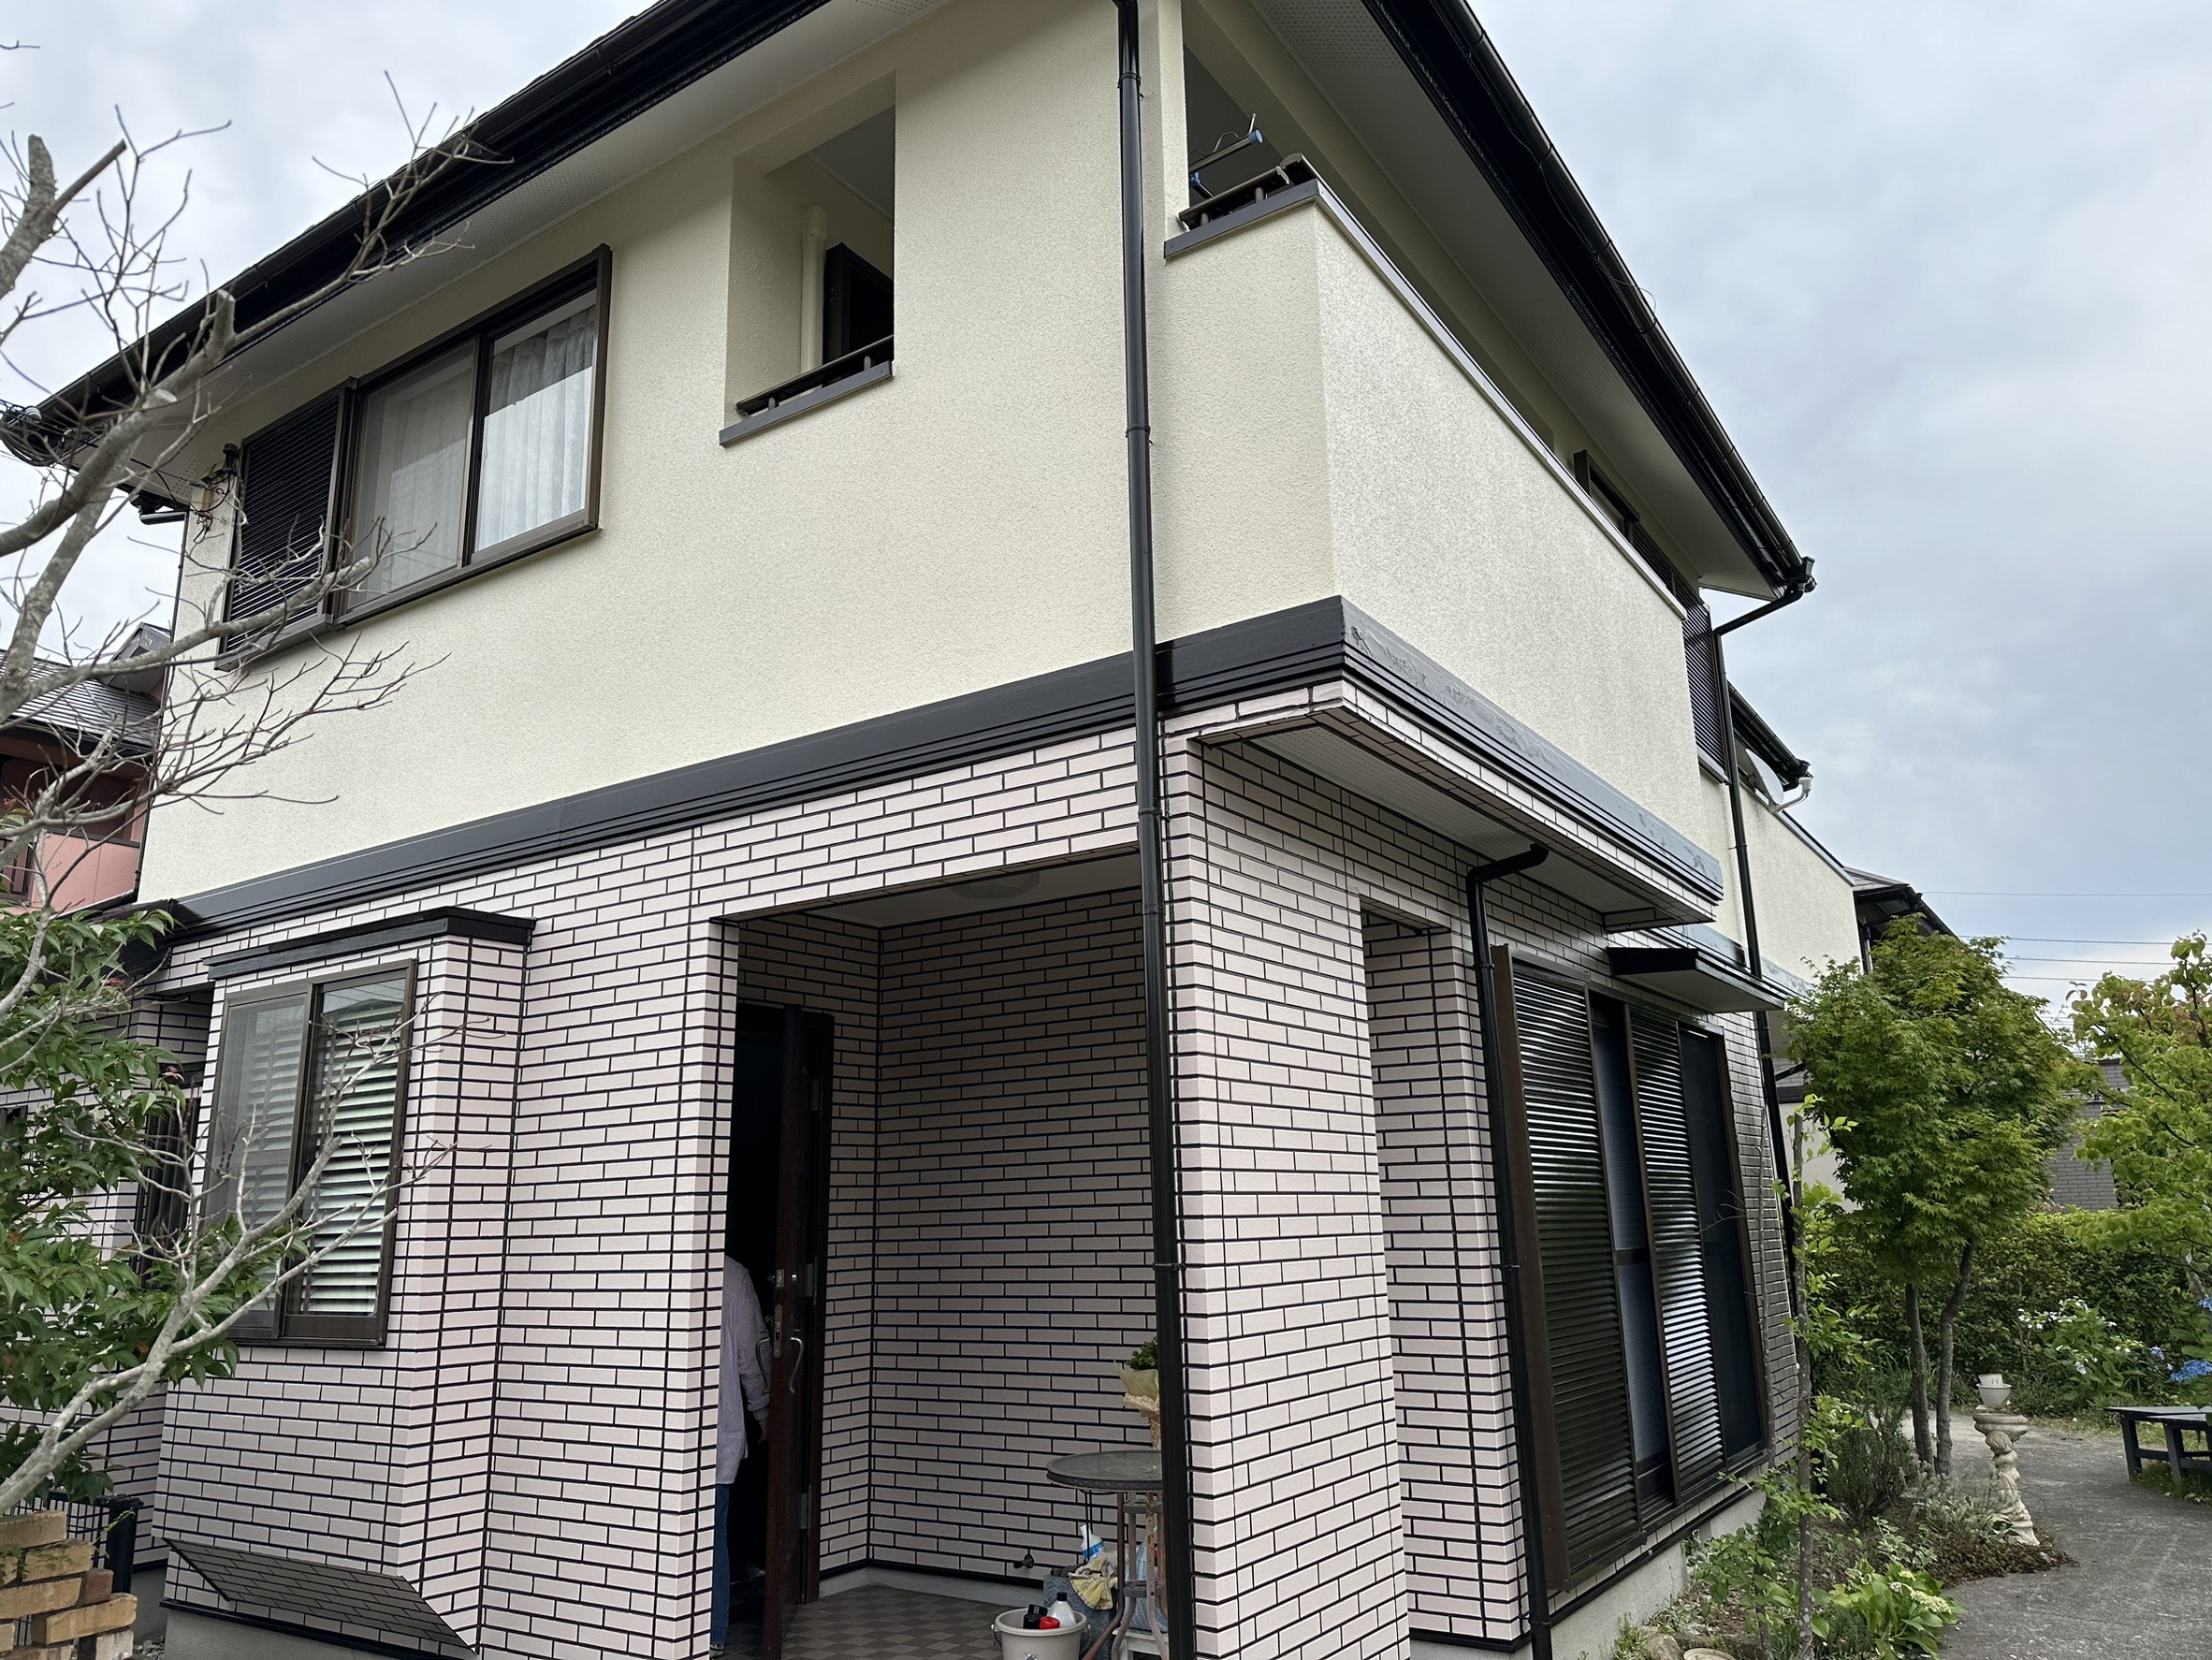 福岡県小郡市希みが丘のI様邸で高い遮熱性のあるフッ素塗料、エシカルプロクールFを使用した外壁塗装を行い、部分的にデザイン塗装を取り入れた工事を行っていきます。6/5完成です。【チラシより】